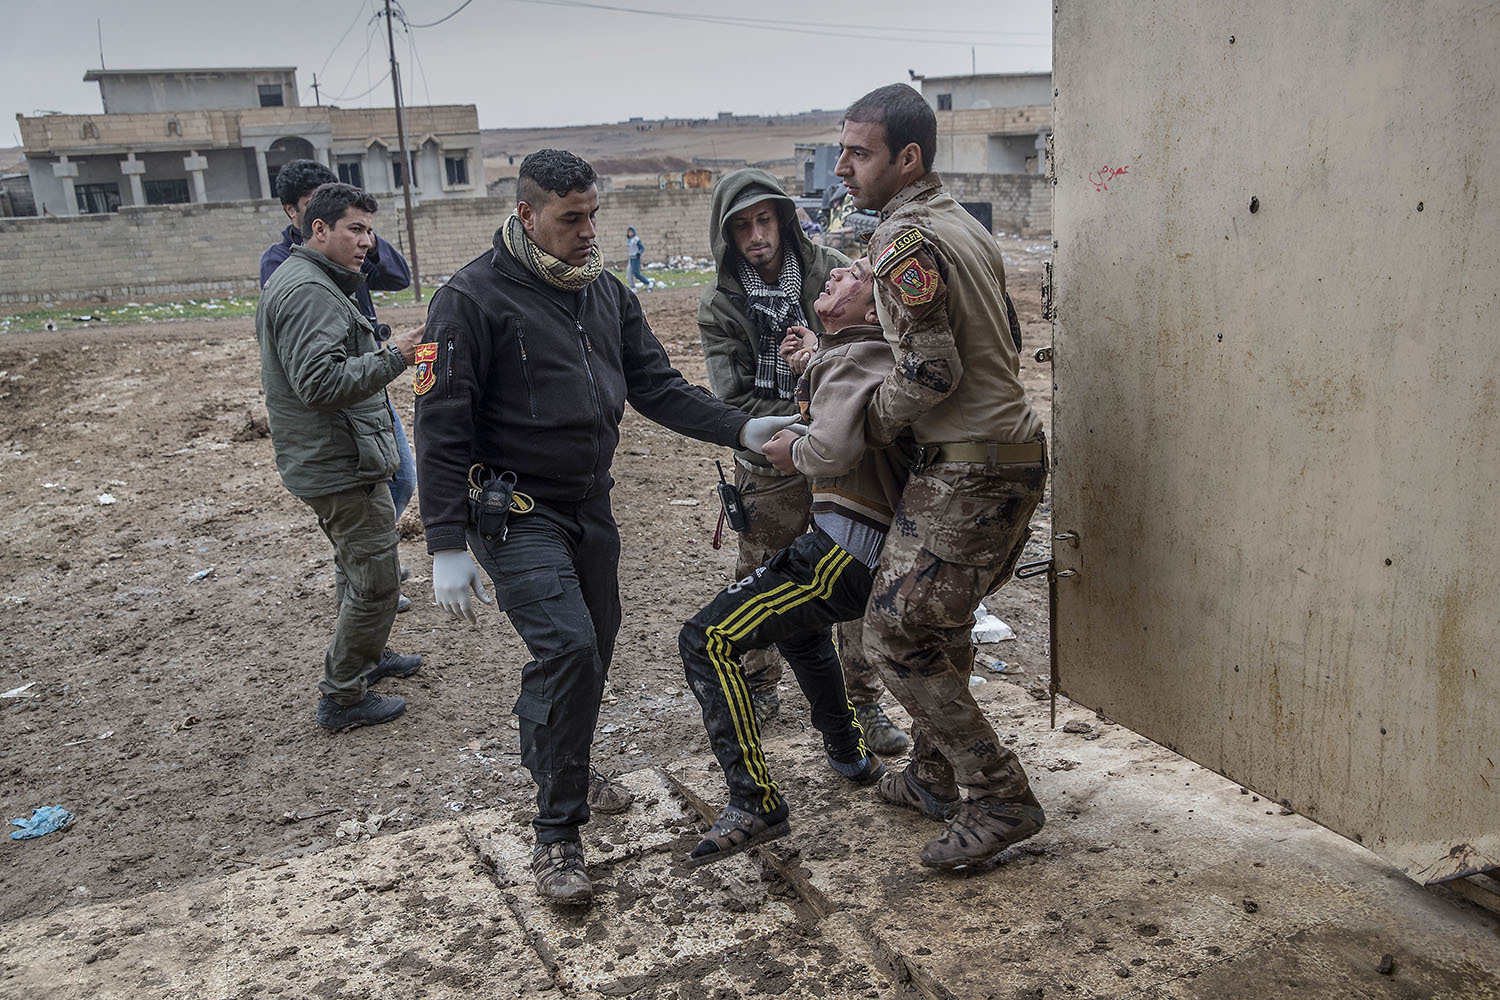 foto : magnus wennman : en man i 40års åldern som blivit skjuten i buken kommer in på kliniken. hans två söner inser snart att han avlidit. fältsjukhuset vid irakiska frontlinjen i mosul. hit kommer skadade och dödade civila och militärer från striderna i mosul. de som inte avlider får akut sjukvård och körs vidare till sjukhuset i erbil.